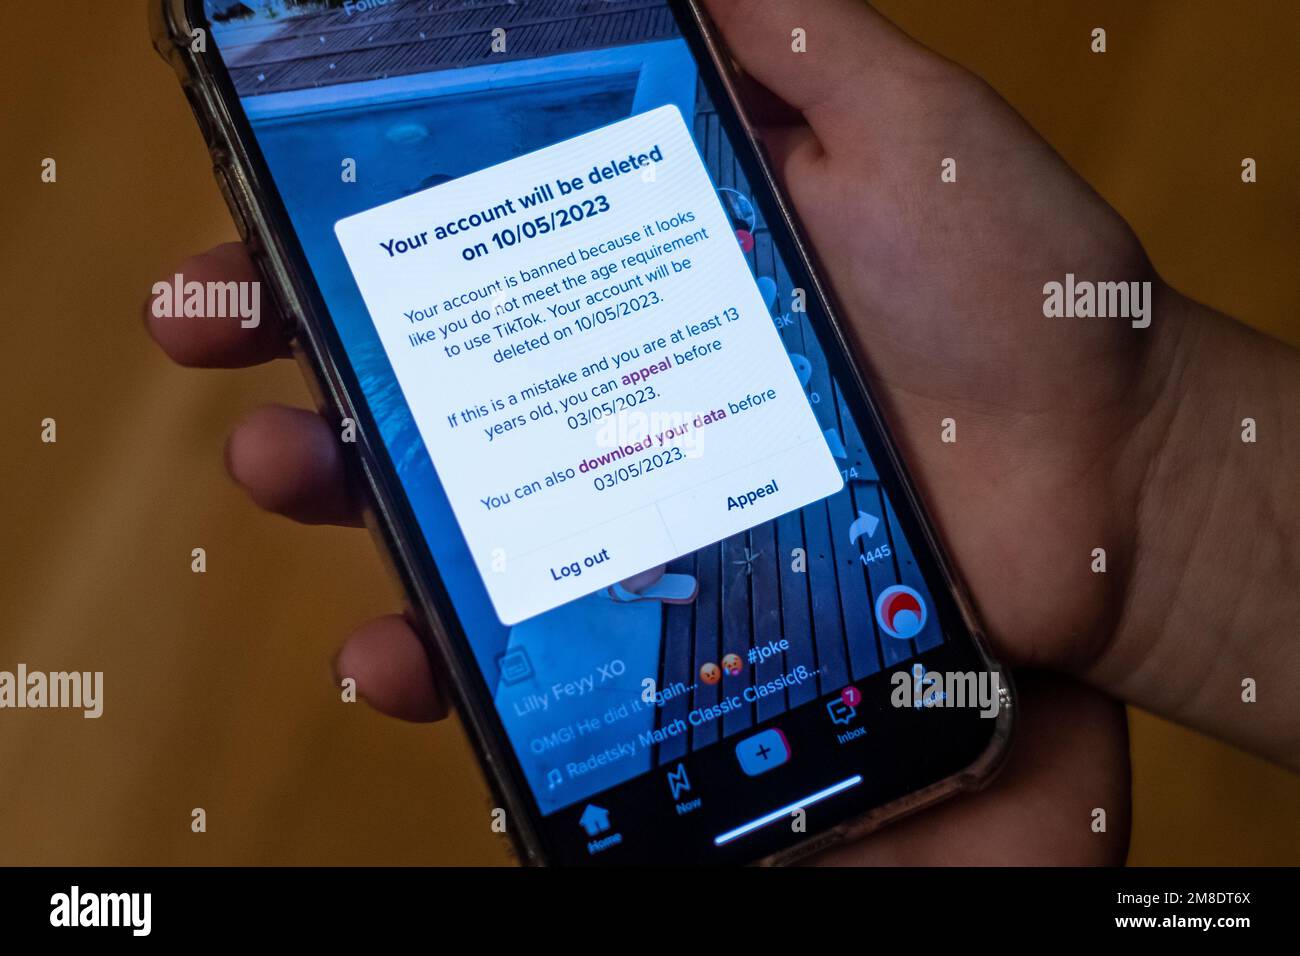 Enfant tenant un téléphone mobile avec un message de compte supprimé dans l'application TikTok. Tik Tok a interdit les comptes d'enfants de moins de 13 ans en Europe. Banque D'Images